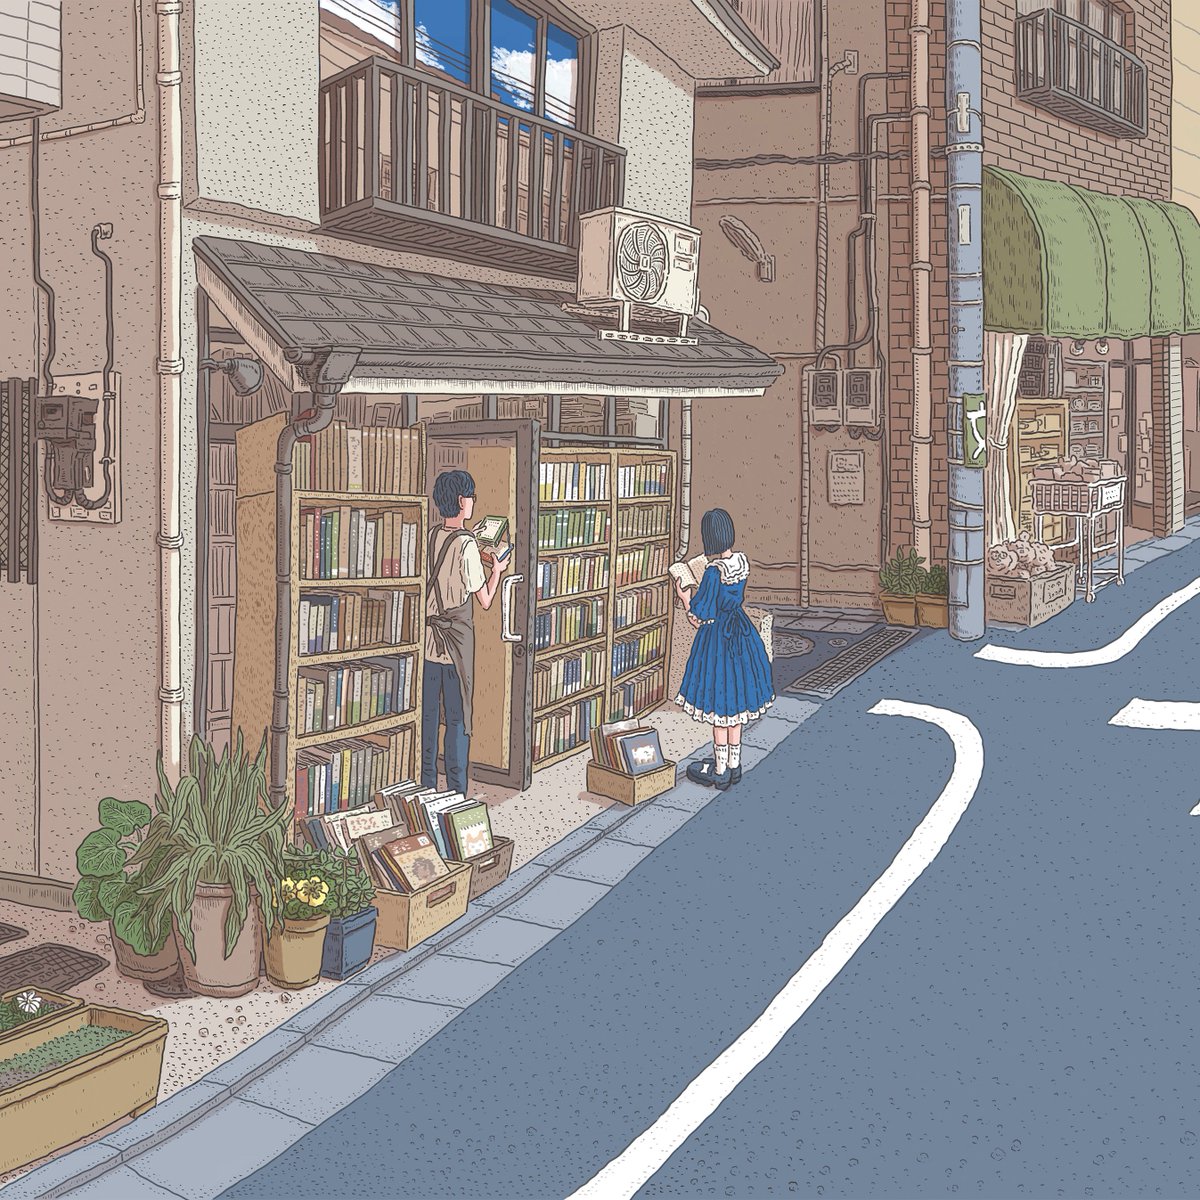 中江有里さん著『万葉と沙羅』(文藝春秋)
装画を担当しました。
下北沢の古本屋に佇むふたりを描きました。
2021年10月21日発売です。 